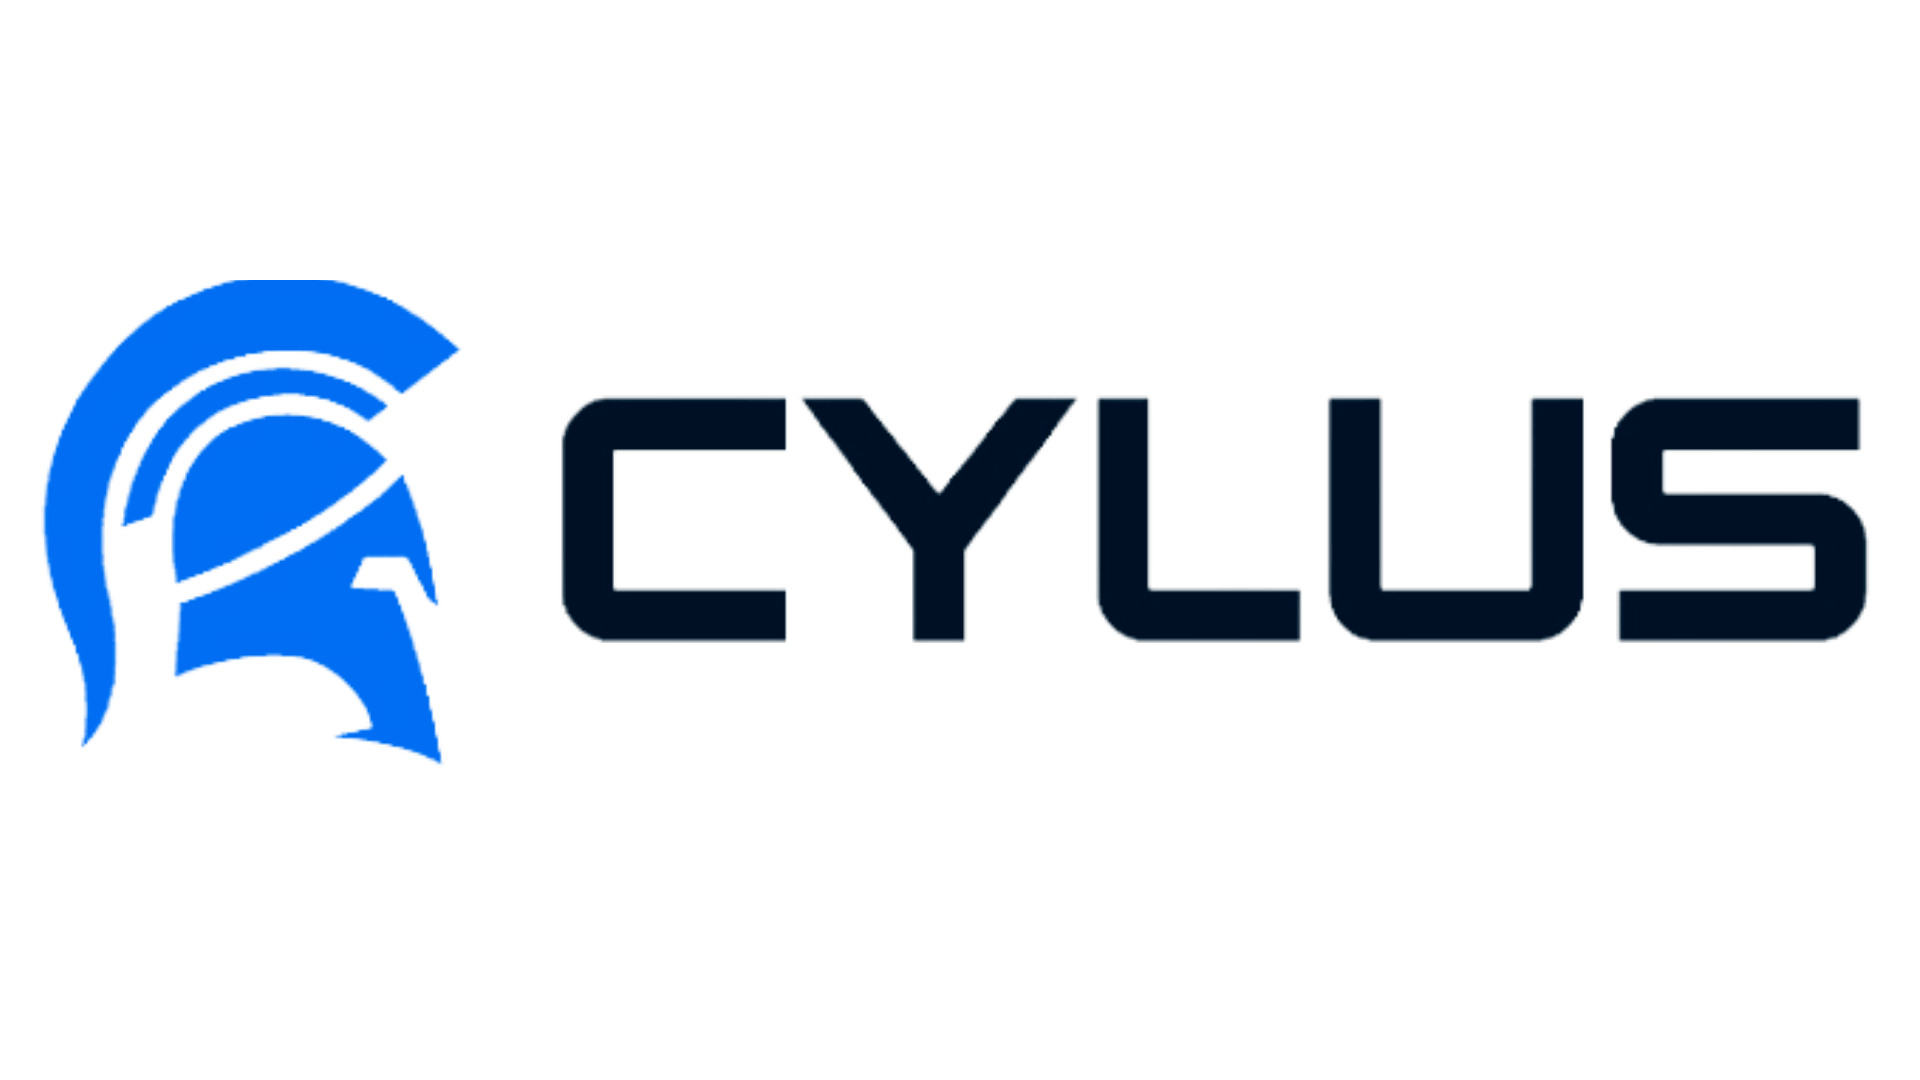 Cylus logo